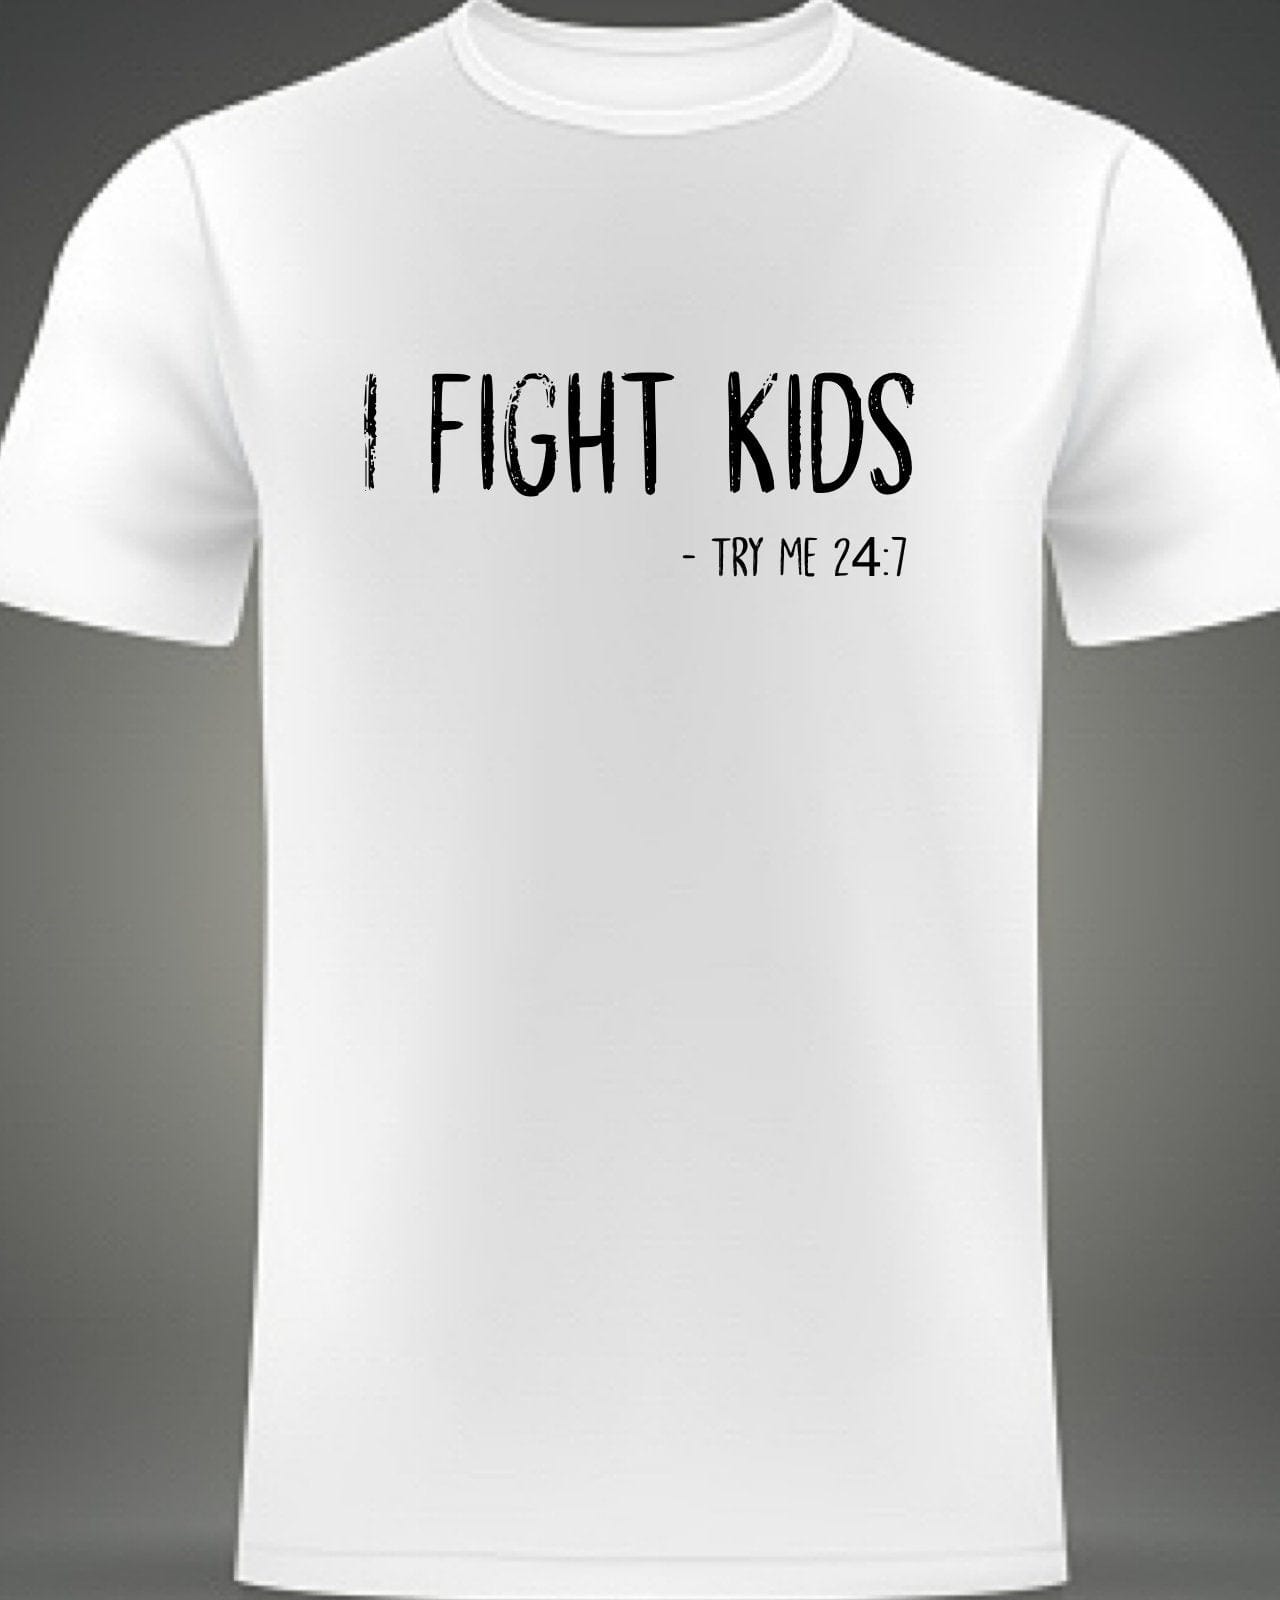 InsensitiviTees Shirts S / White I Fight Kids